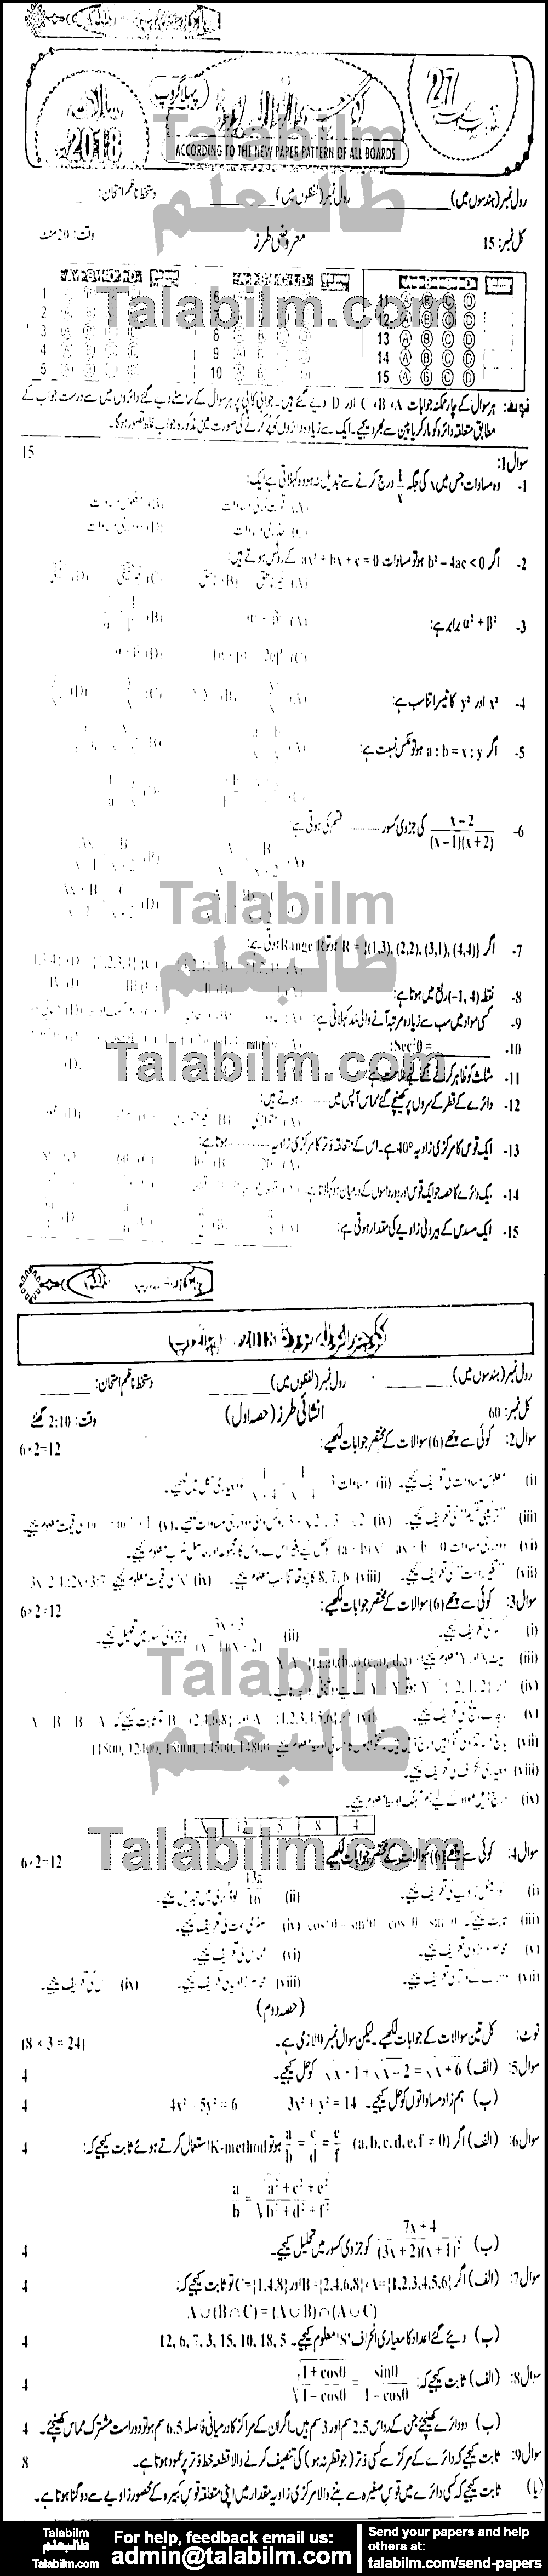 Math 0 past paper for Urdu Medium 2018 Group-I